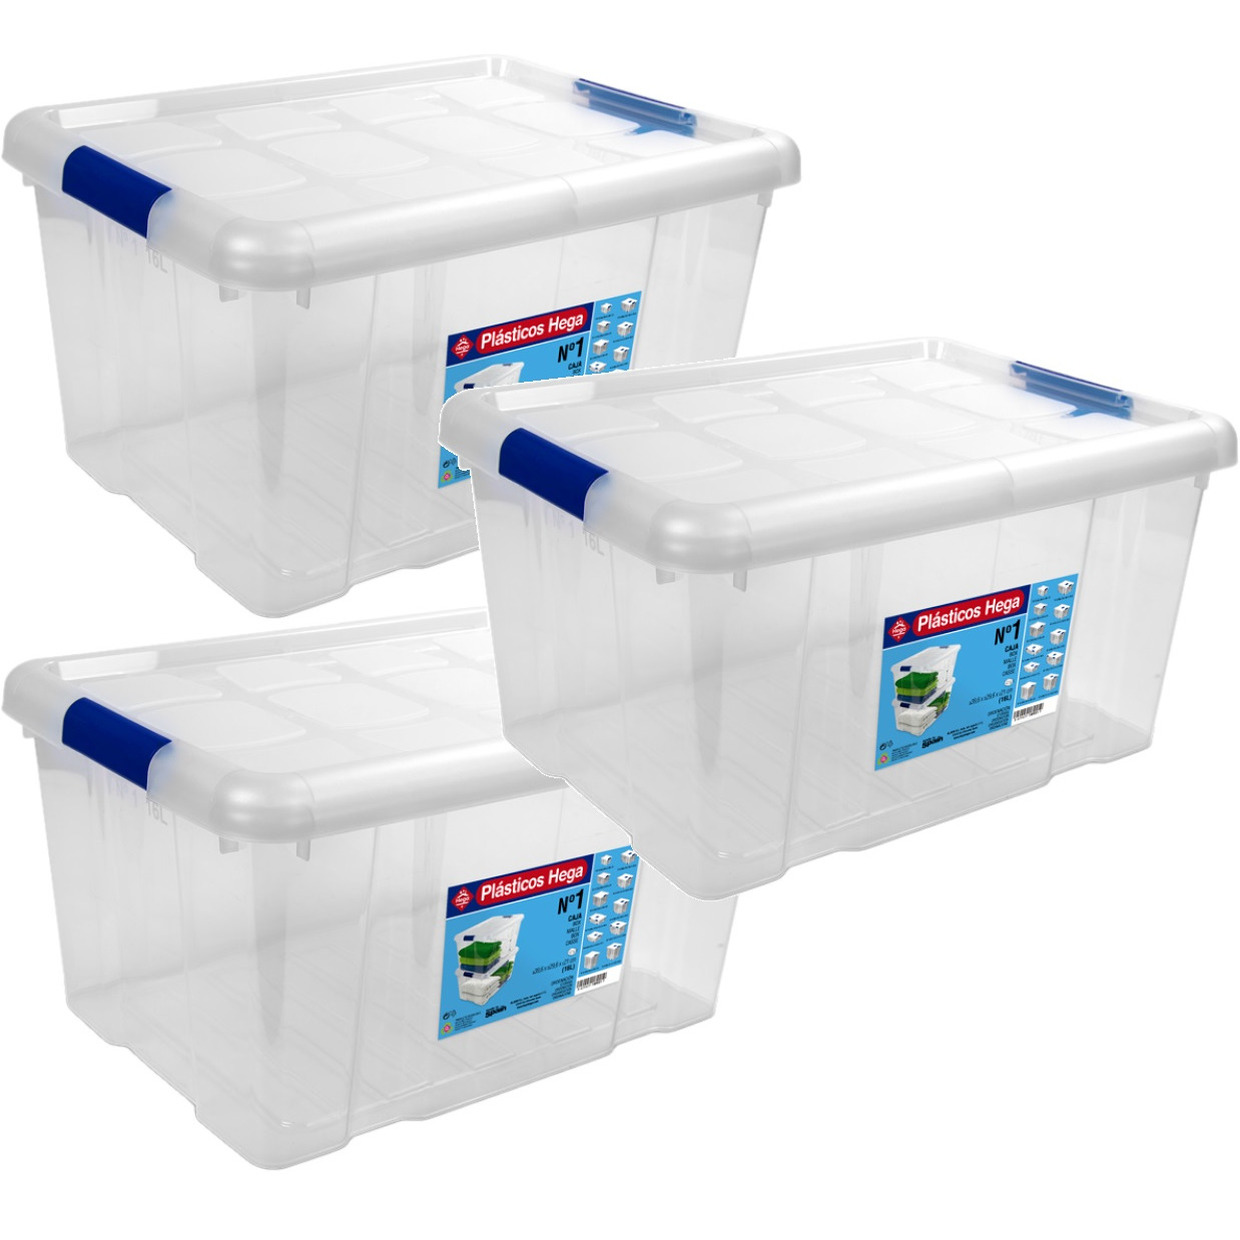 6x Opbergboxen-opbergdozen met deksel 16 liter kunststof transparant-blauw